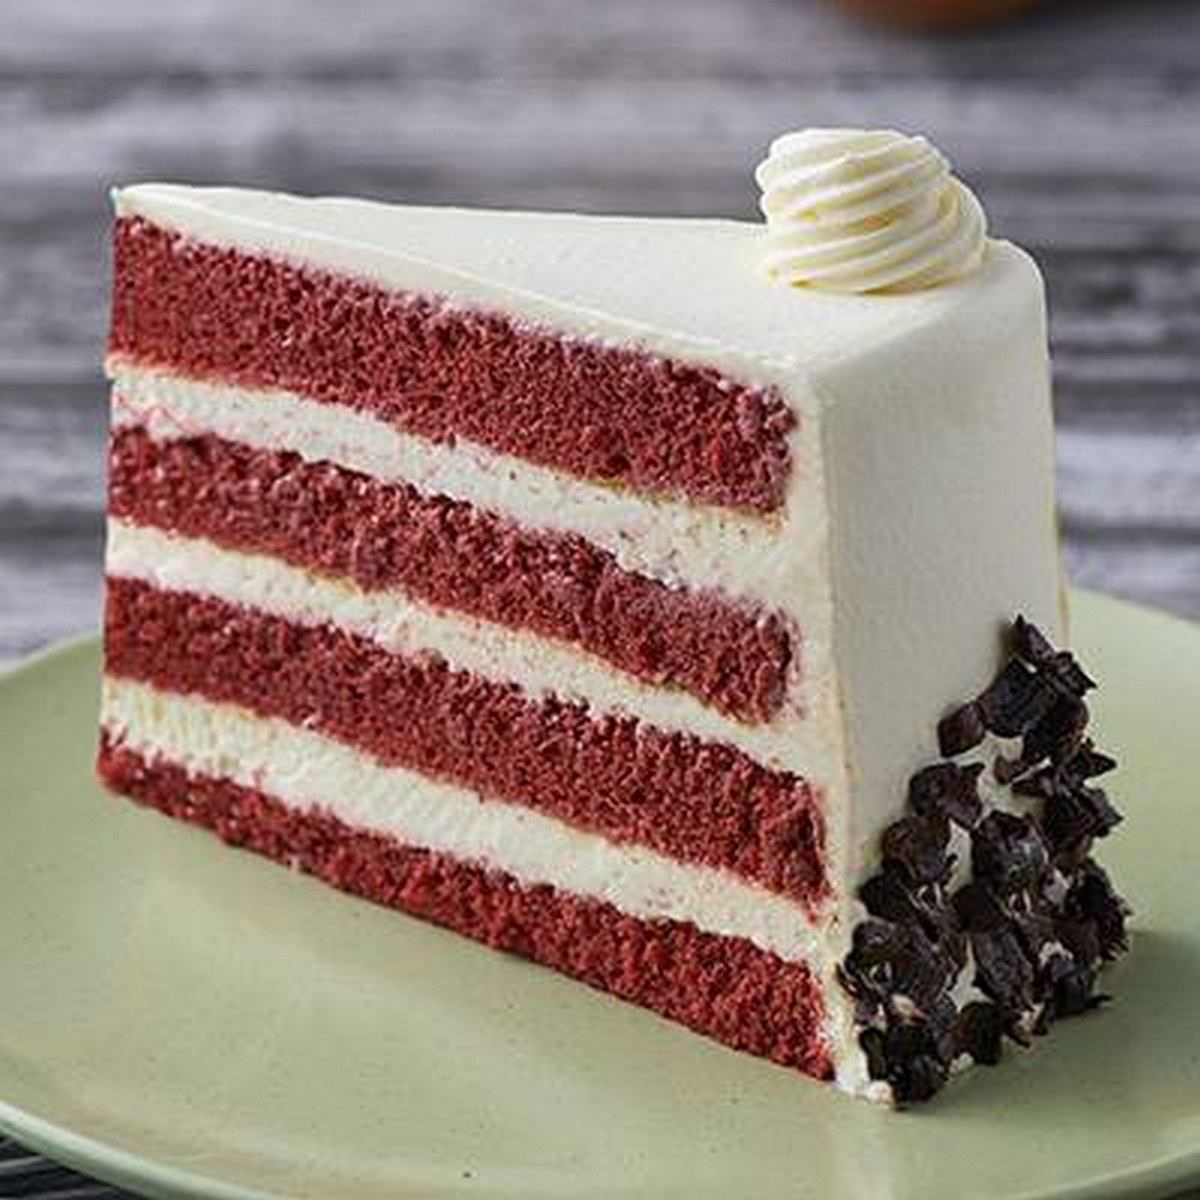 2.-The-Red-Velvet-Cake - LifeStyle 